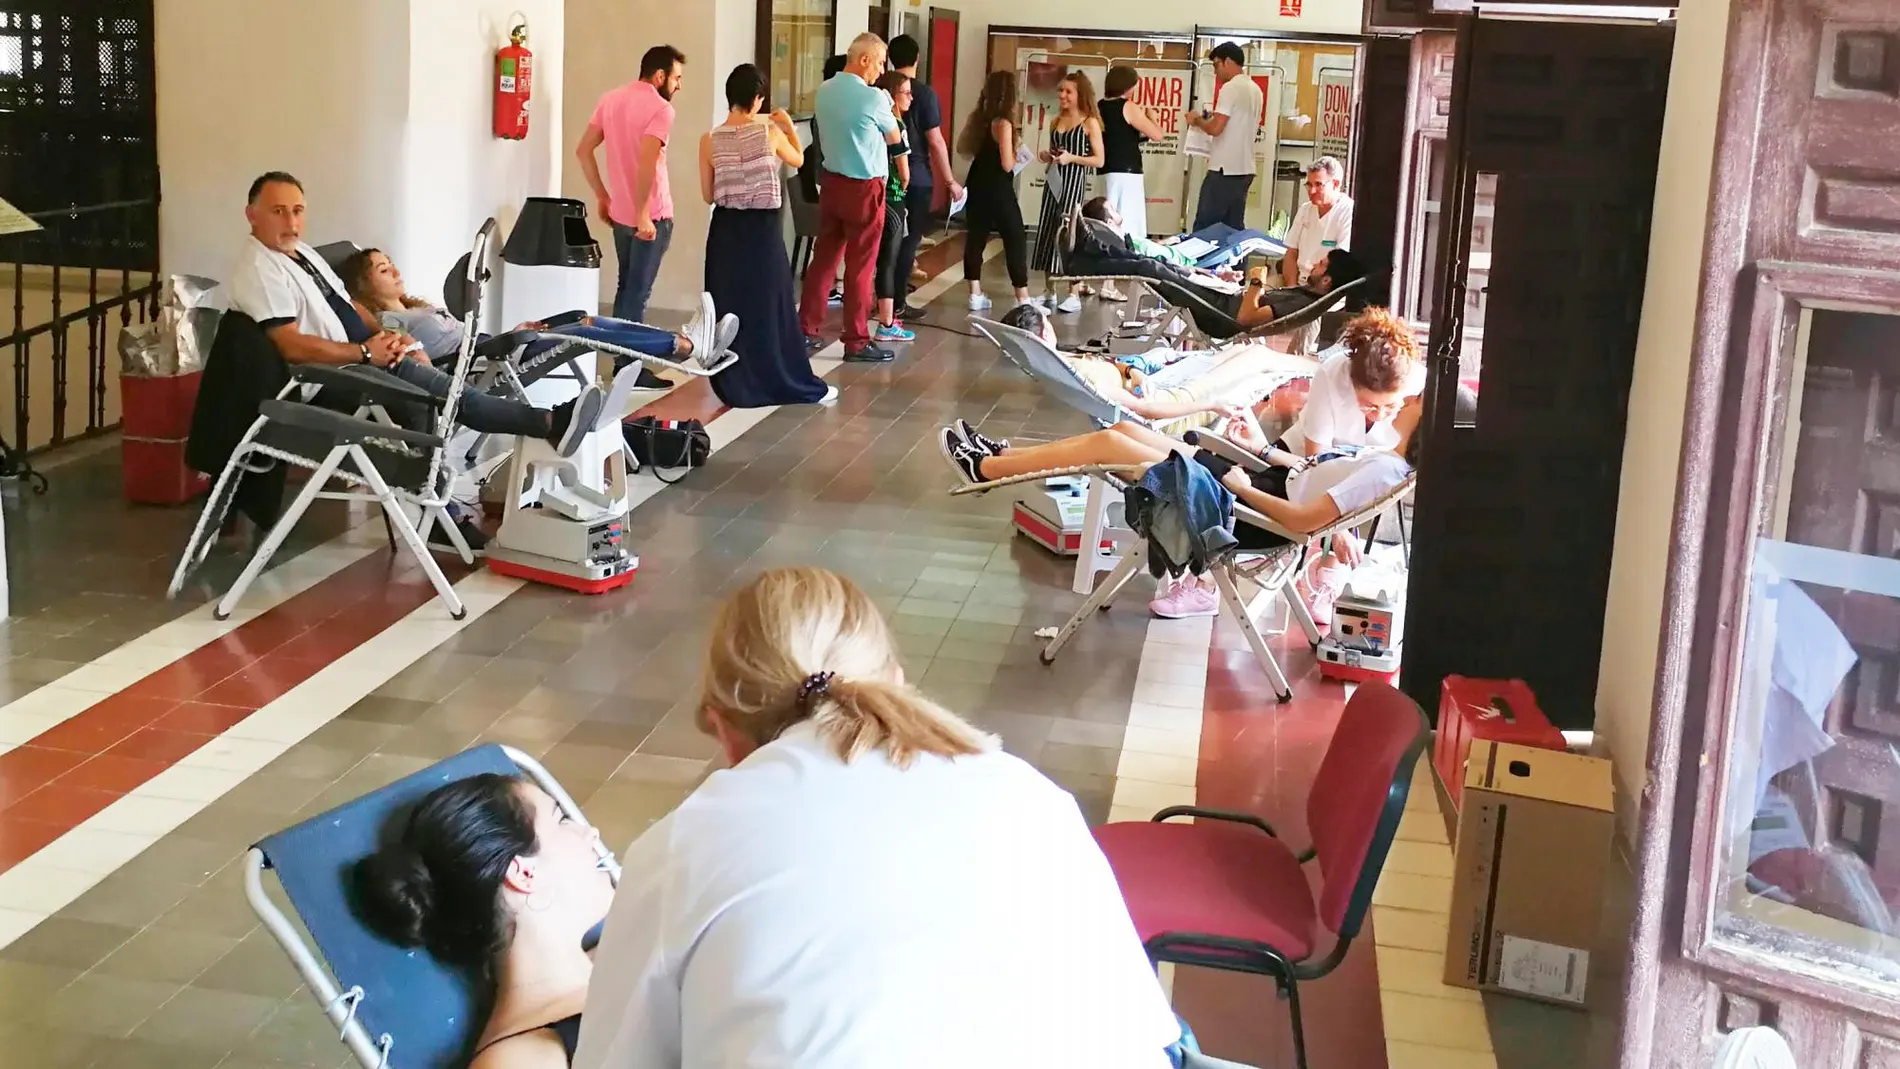 La UCAM participa en el reto de las 5.000 donaciones de sangre